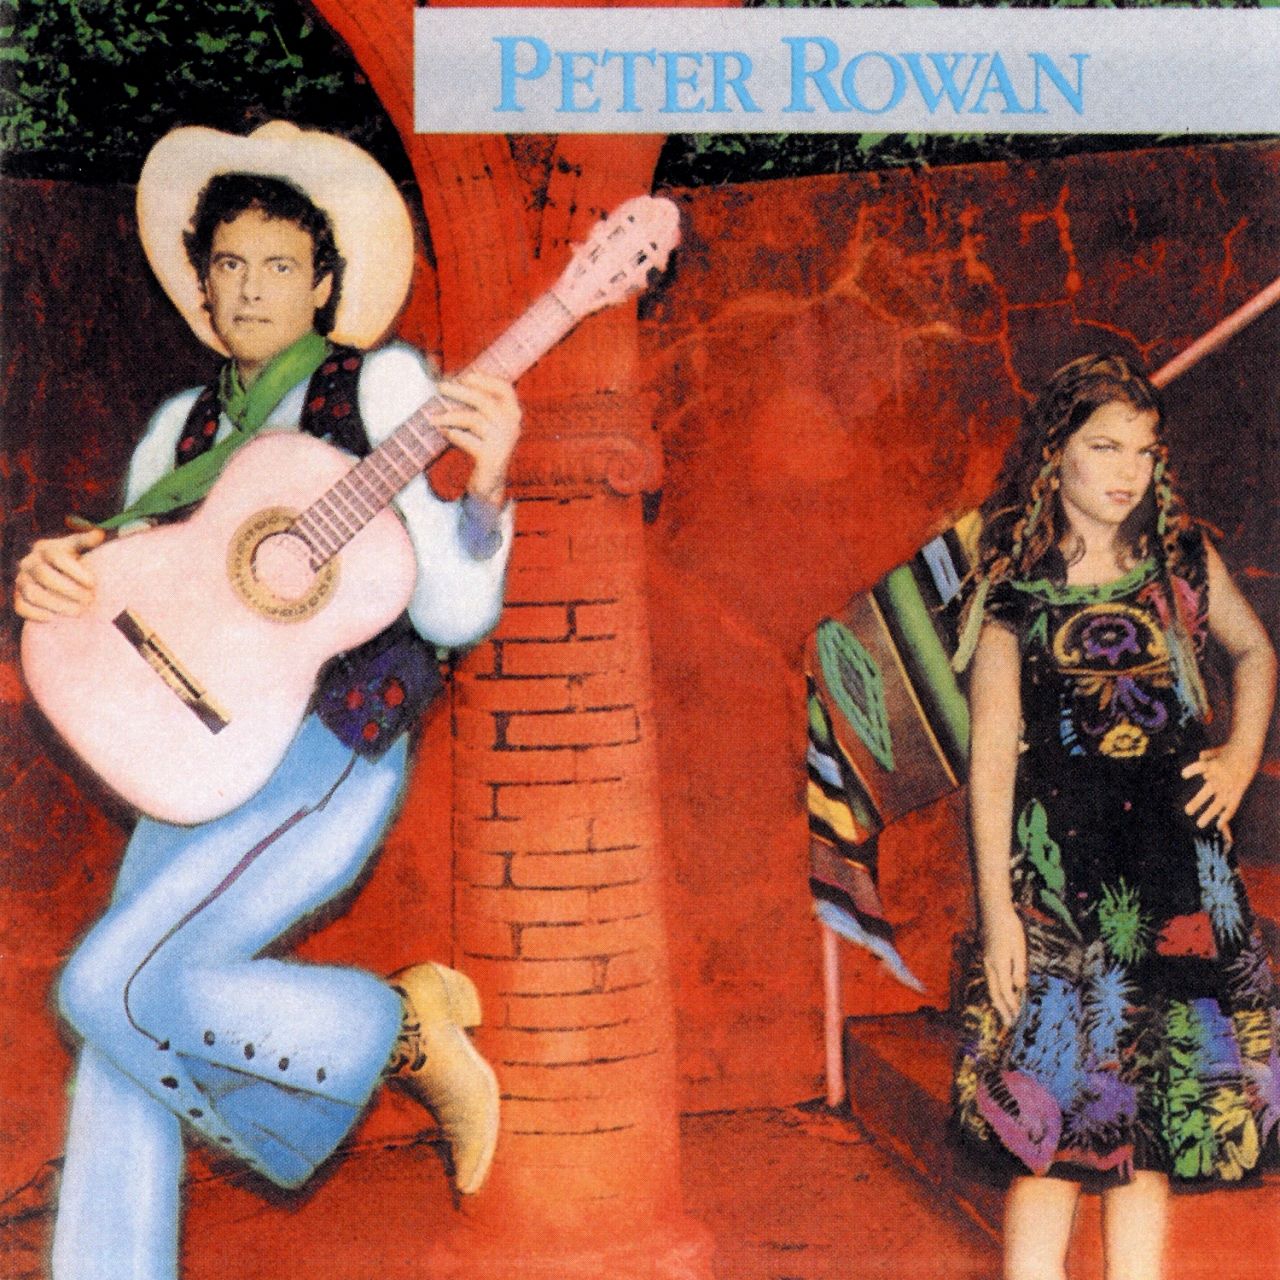 Peter Rowan - Peter Rowan cover album